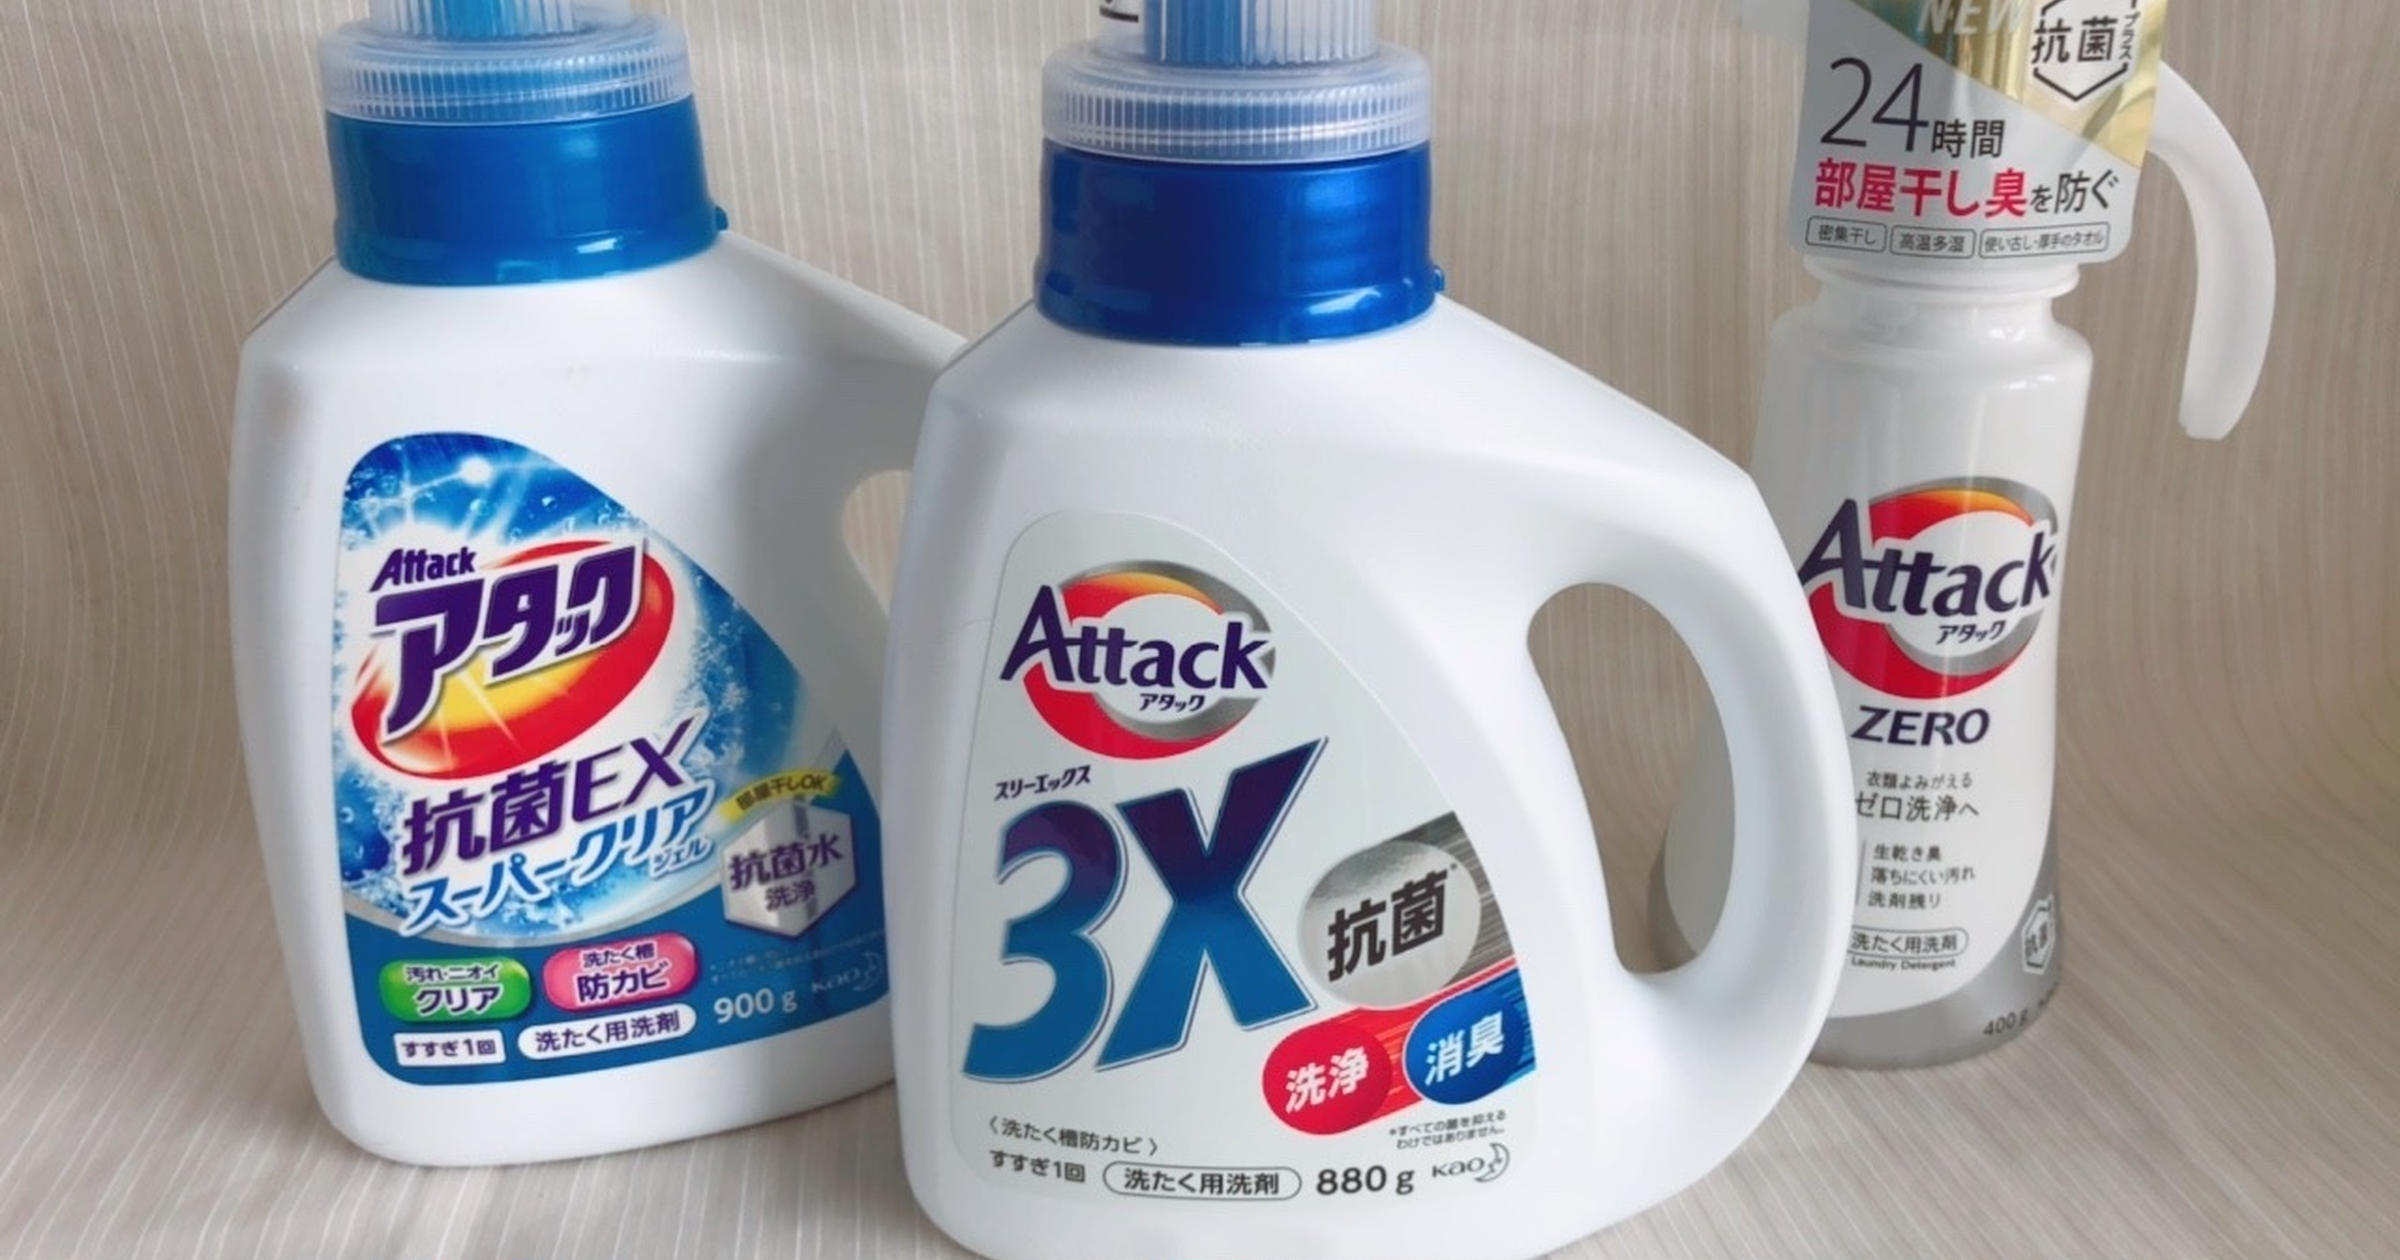 新発売の洗剤「アタック3X」の実力は？同シリーズで検証したら意外な結果に……！ - トクバイニュース